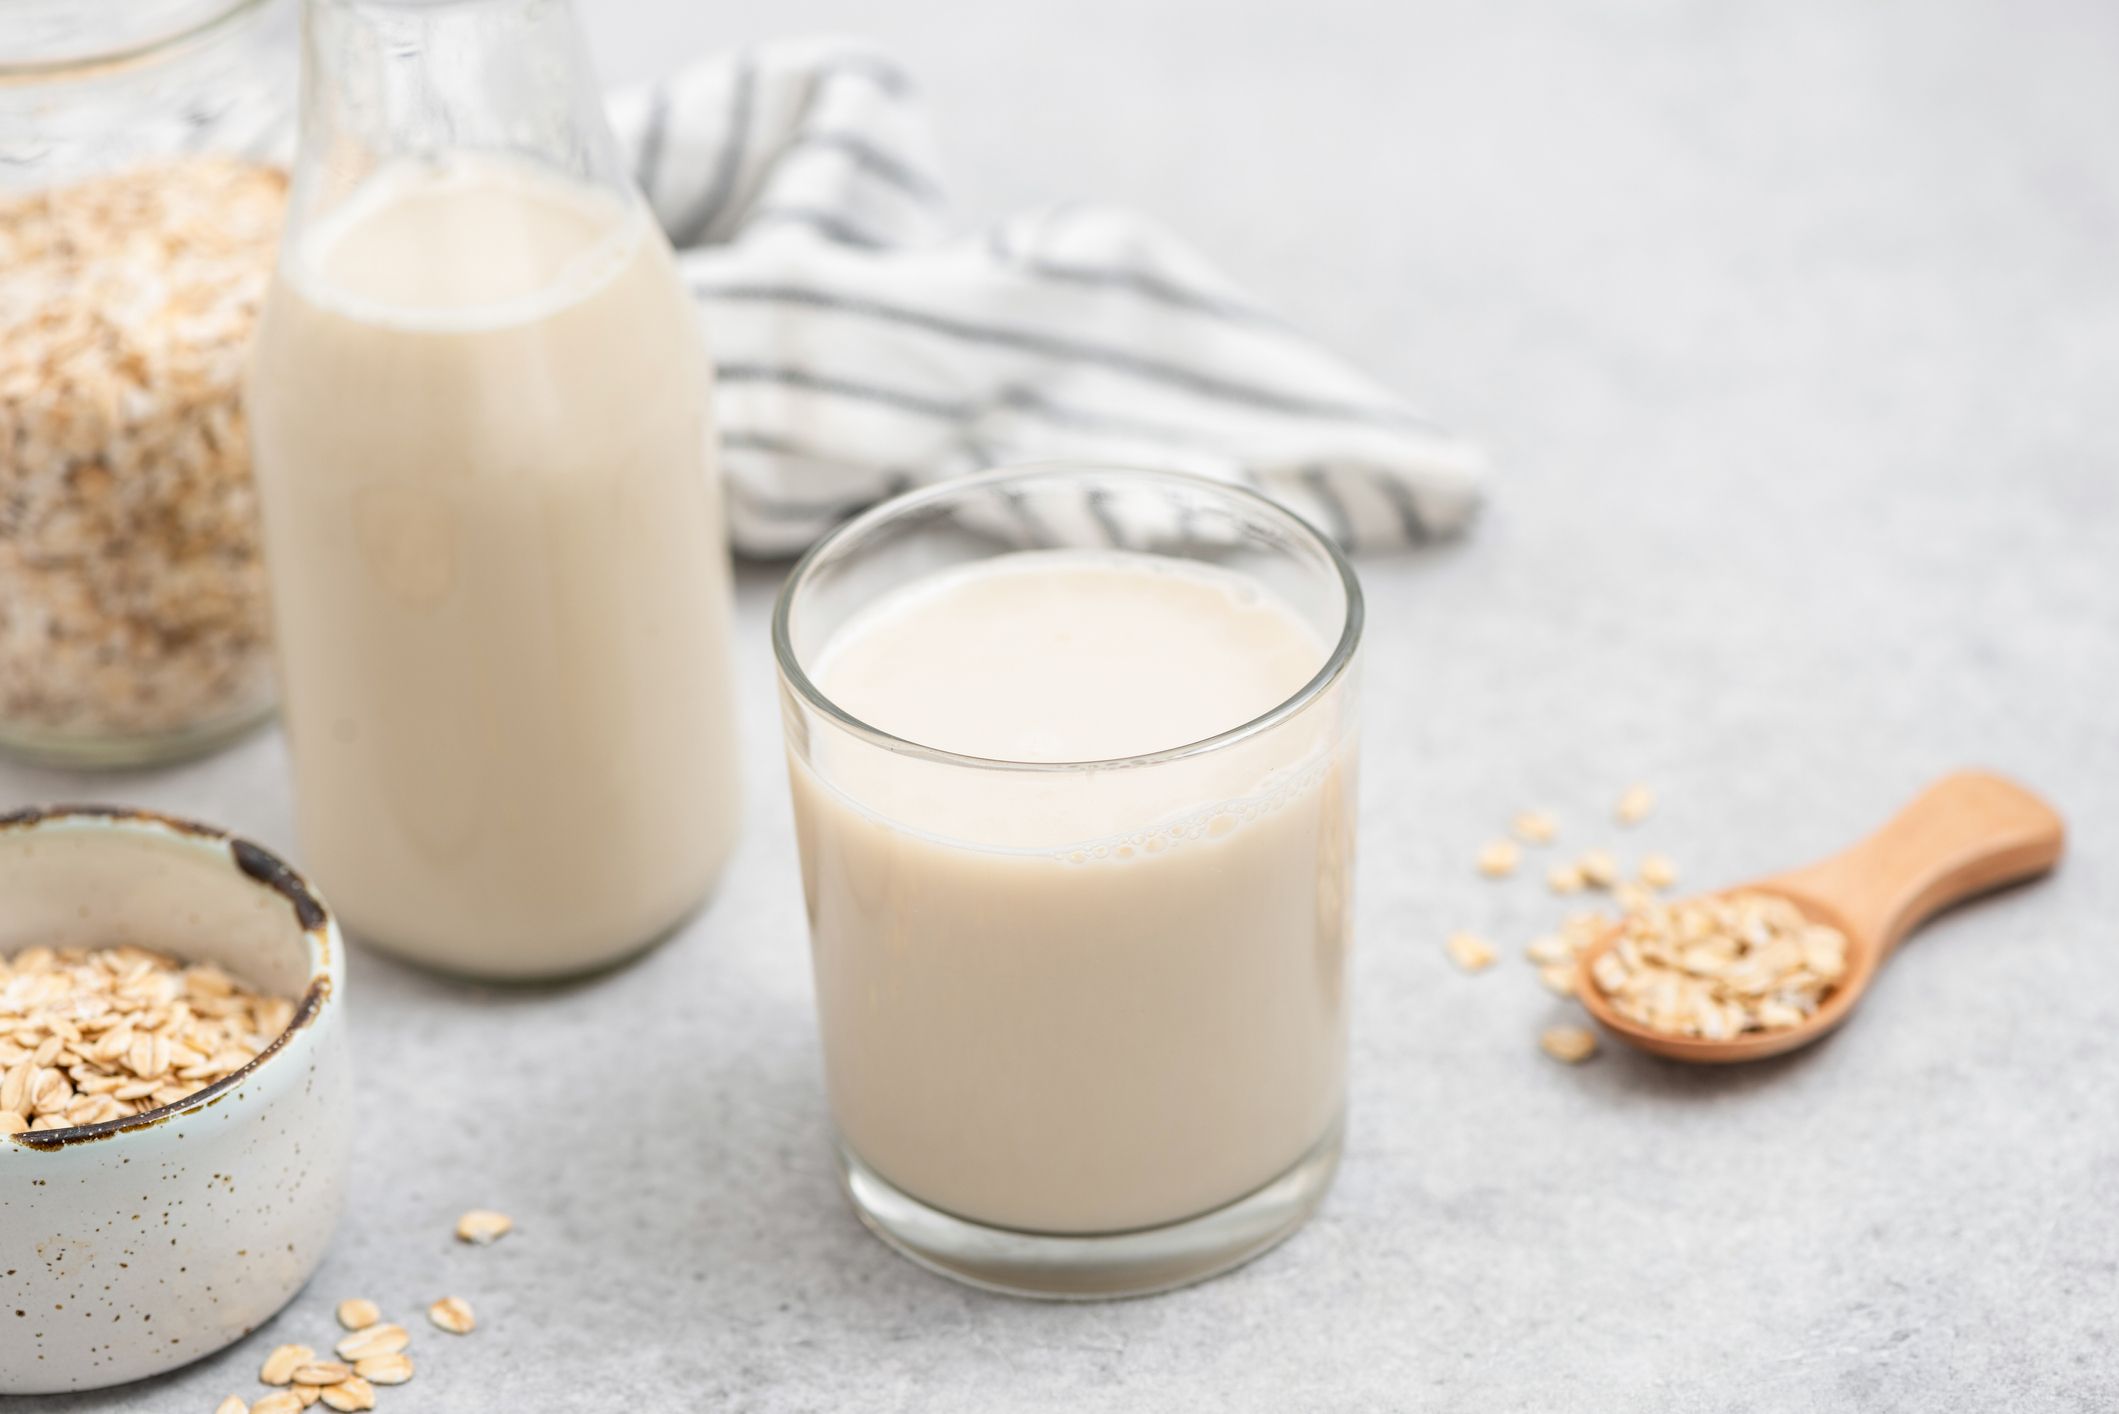 Sula - La leche semi descremada es el acompañante perfecto